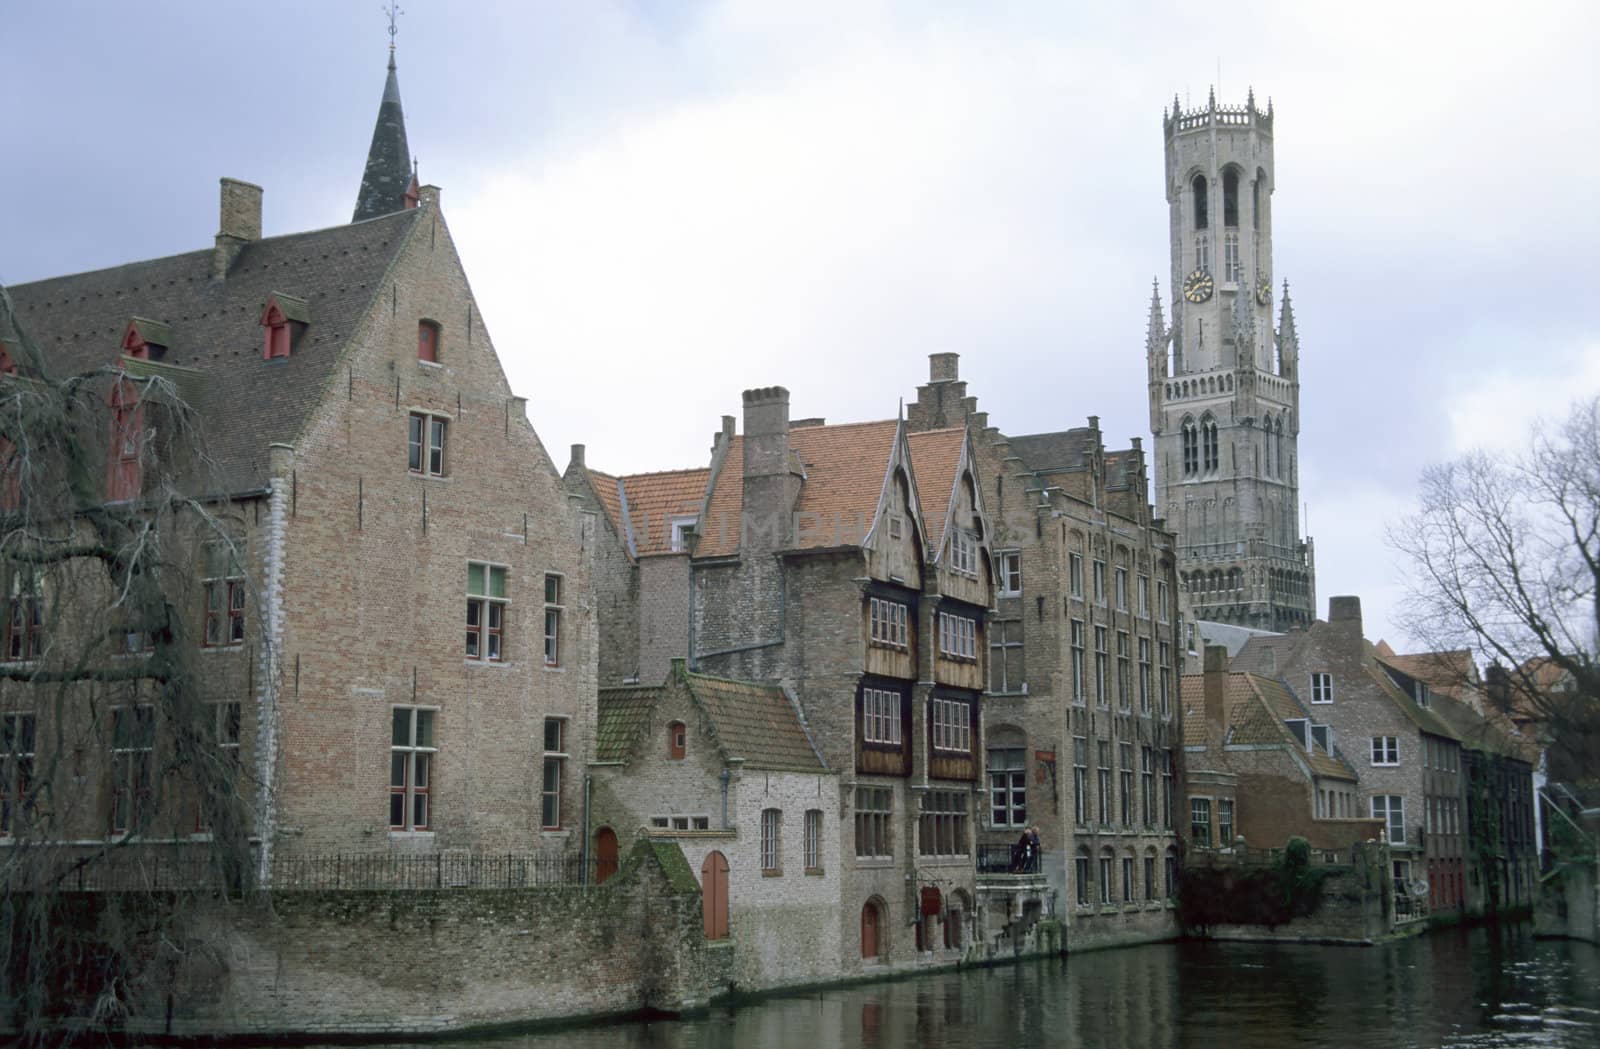 Picturesque canal in Brugges, Belgium.